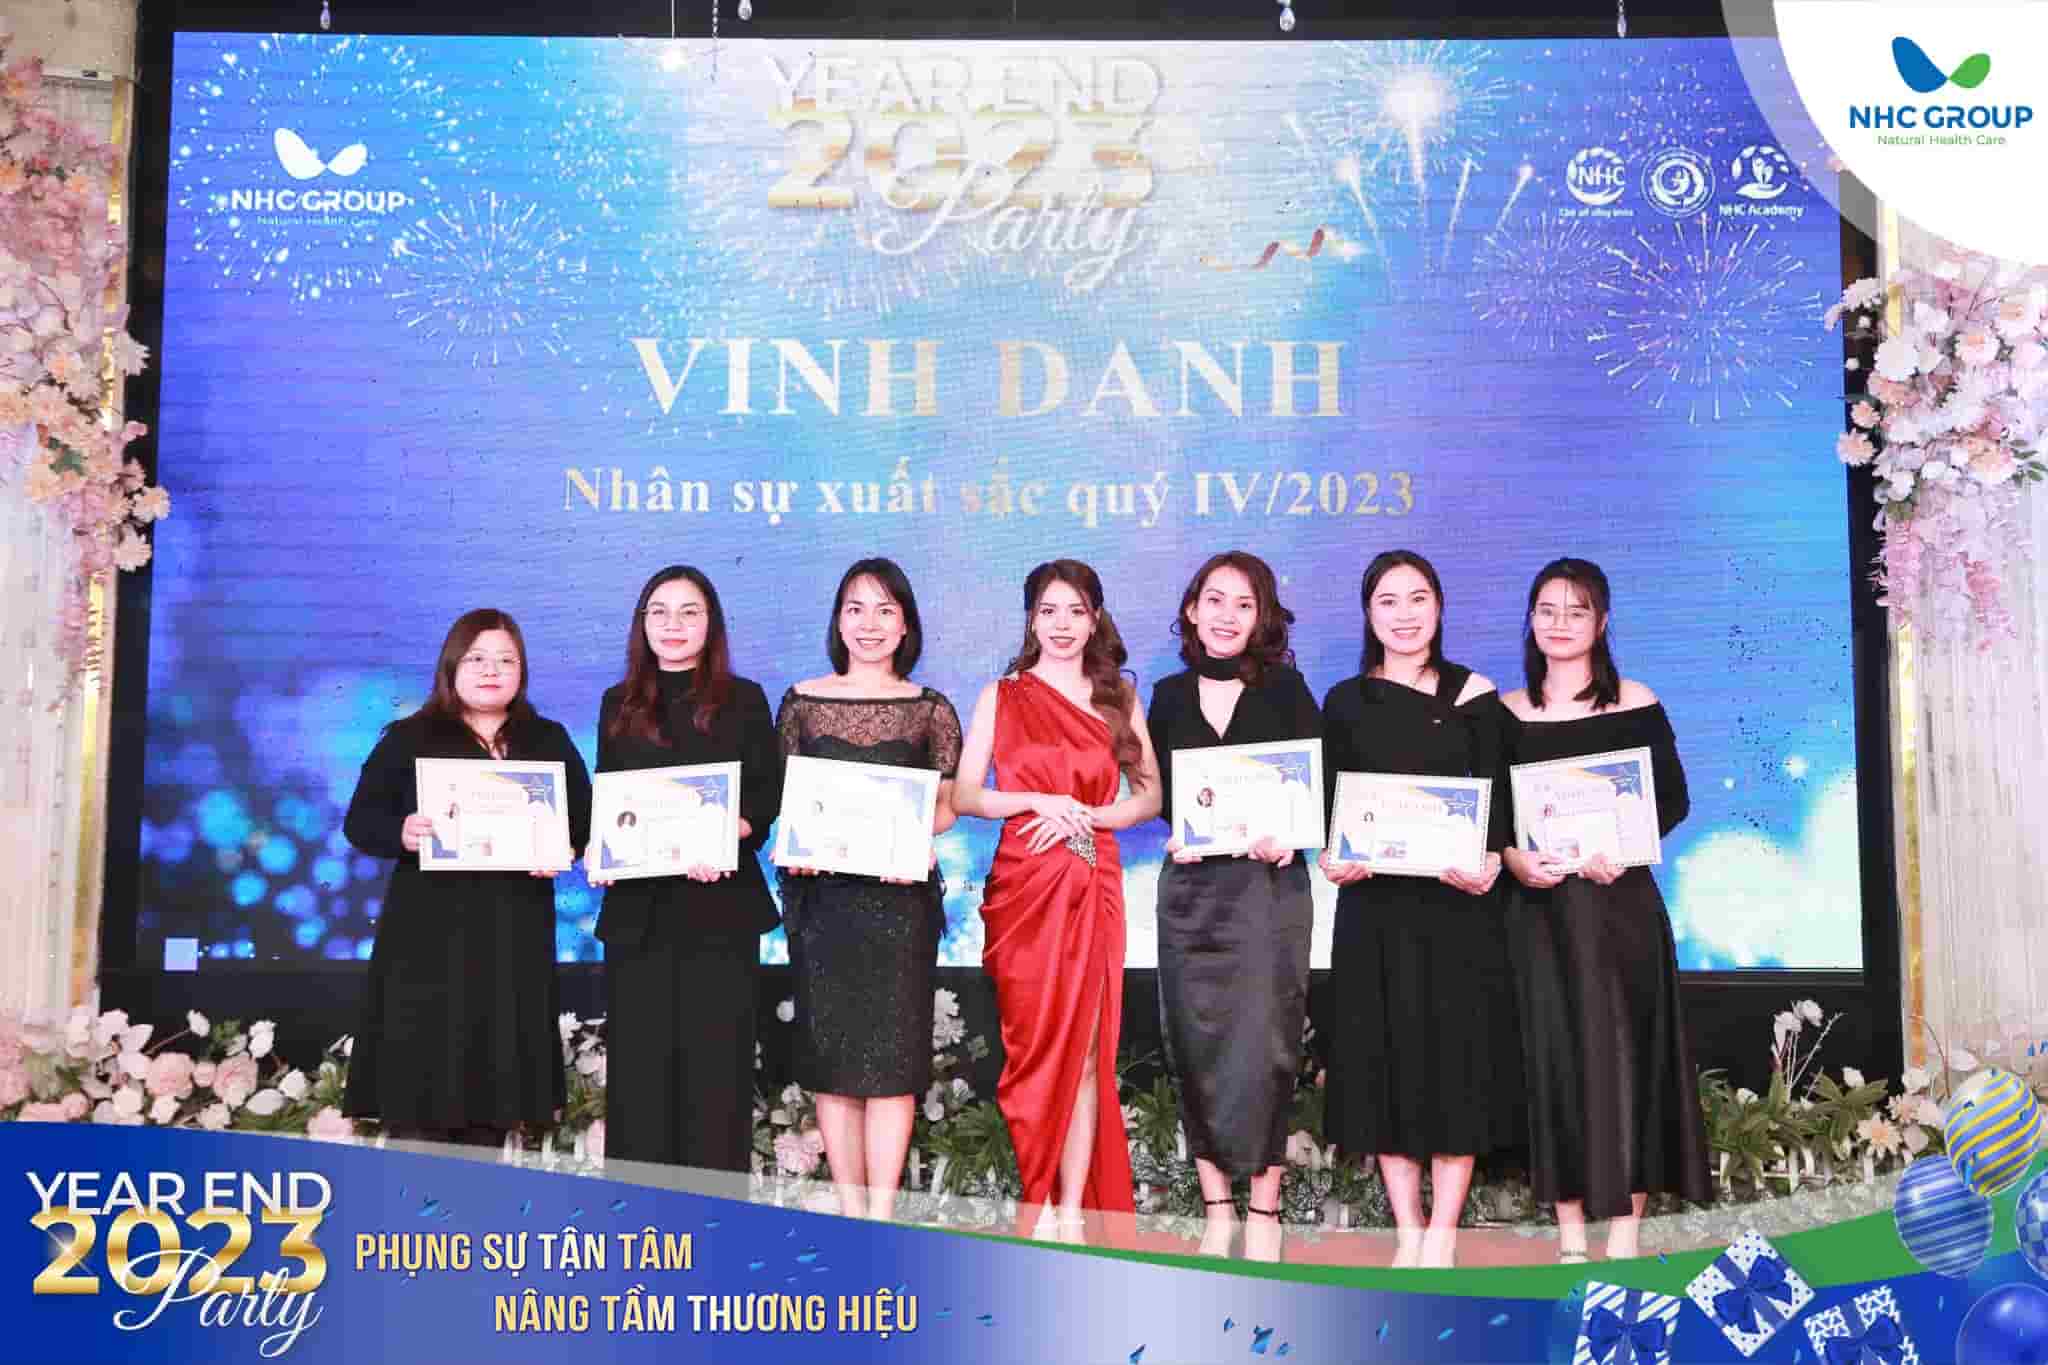 Bà Đặng Thị Minh Chi, Phó Chủ tịch Hội đồng quản trị, Phó Tổng Giám đốc NHC Group vinh danh và trao thưởng cho các nhân sự có thành tích xuất sắc quý IV/2023.